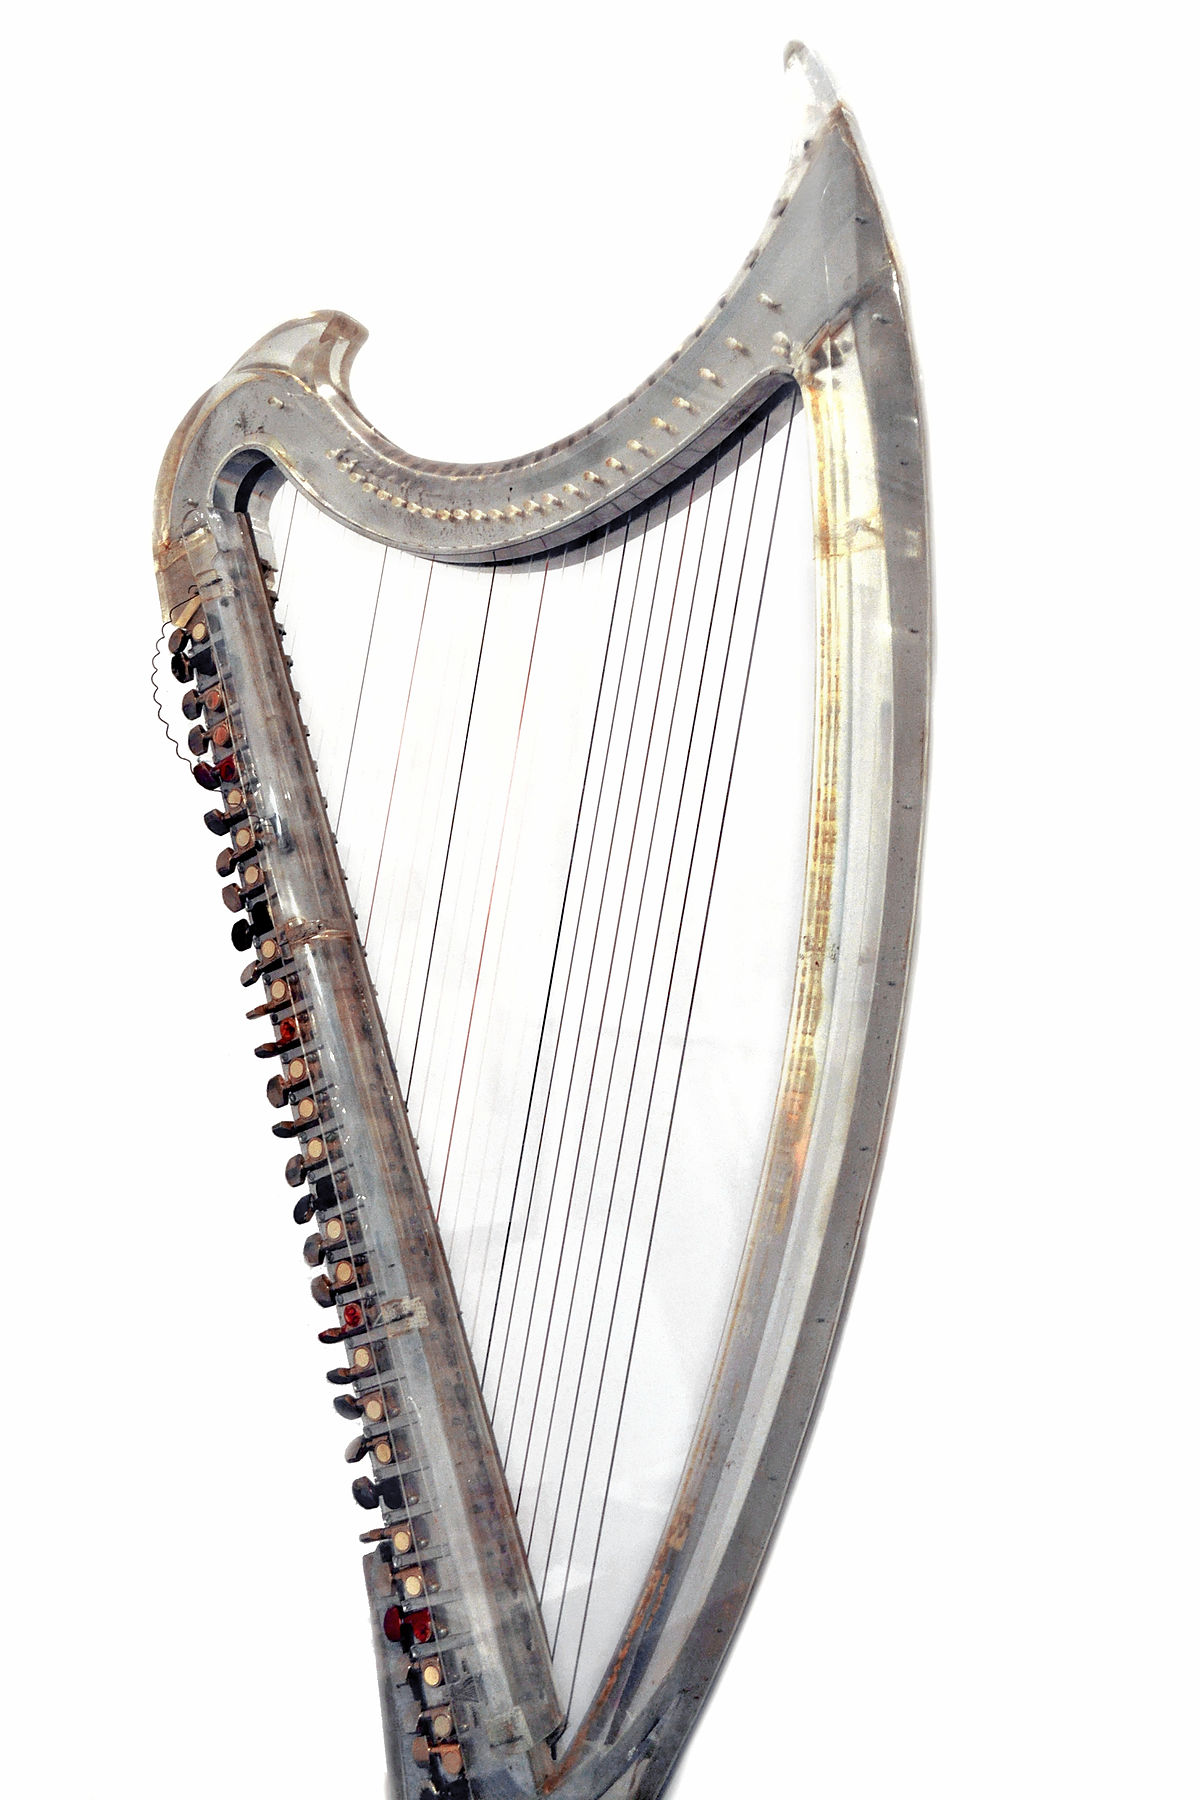 Harpe celtique — Wikipédia